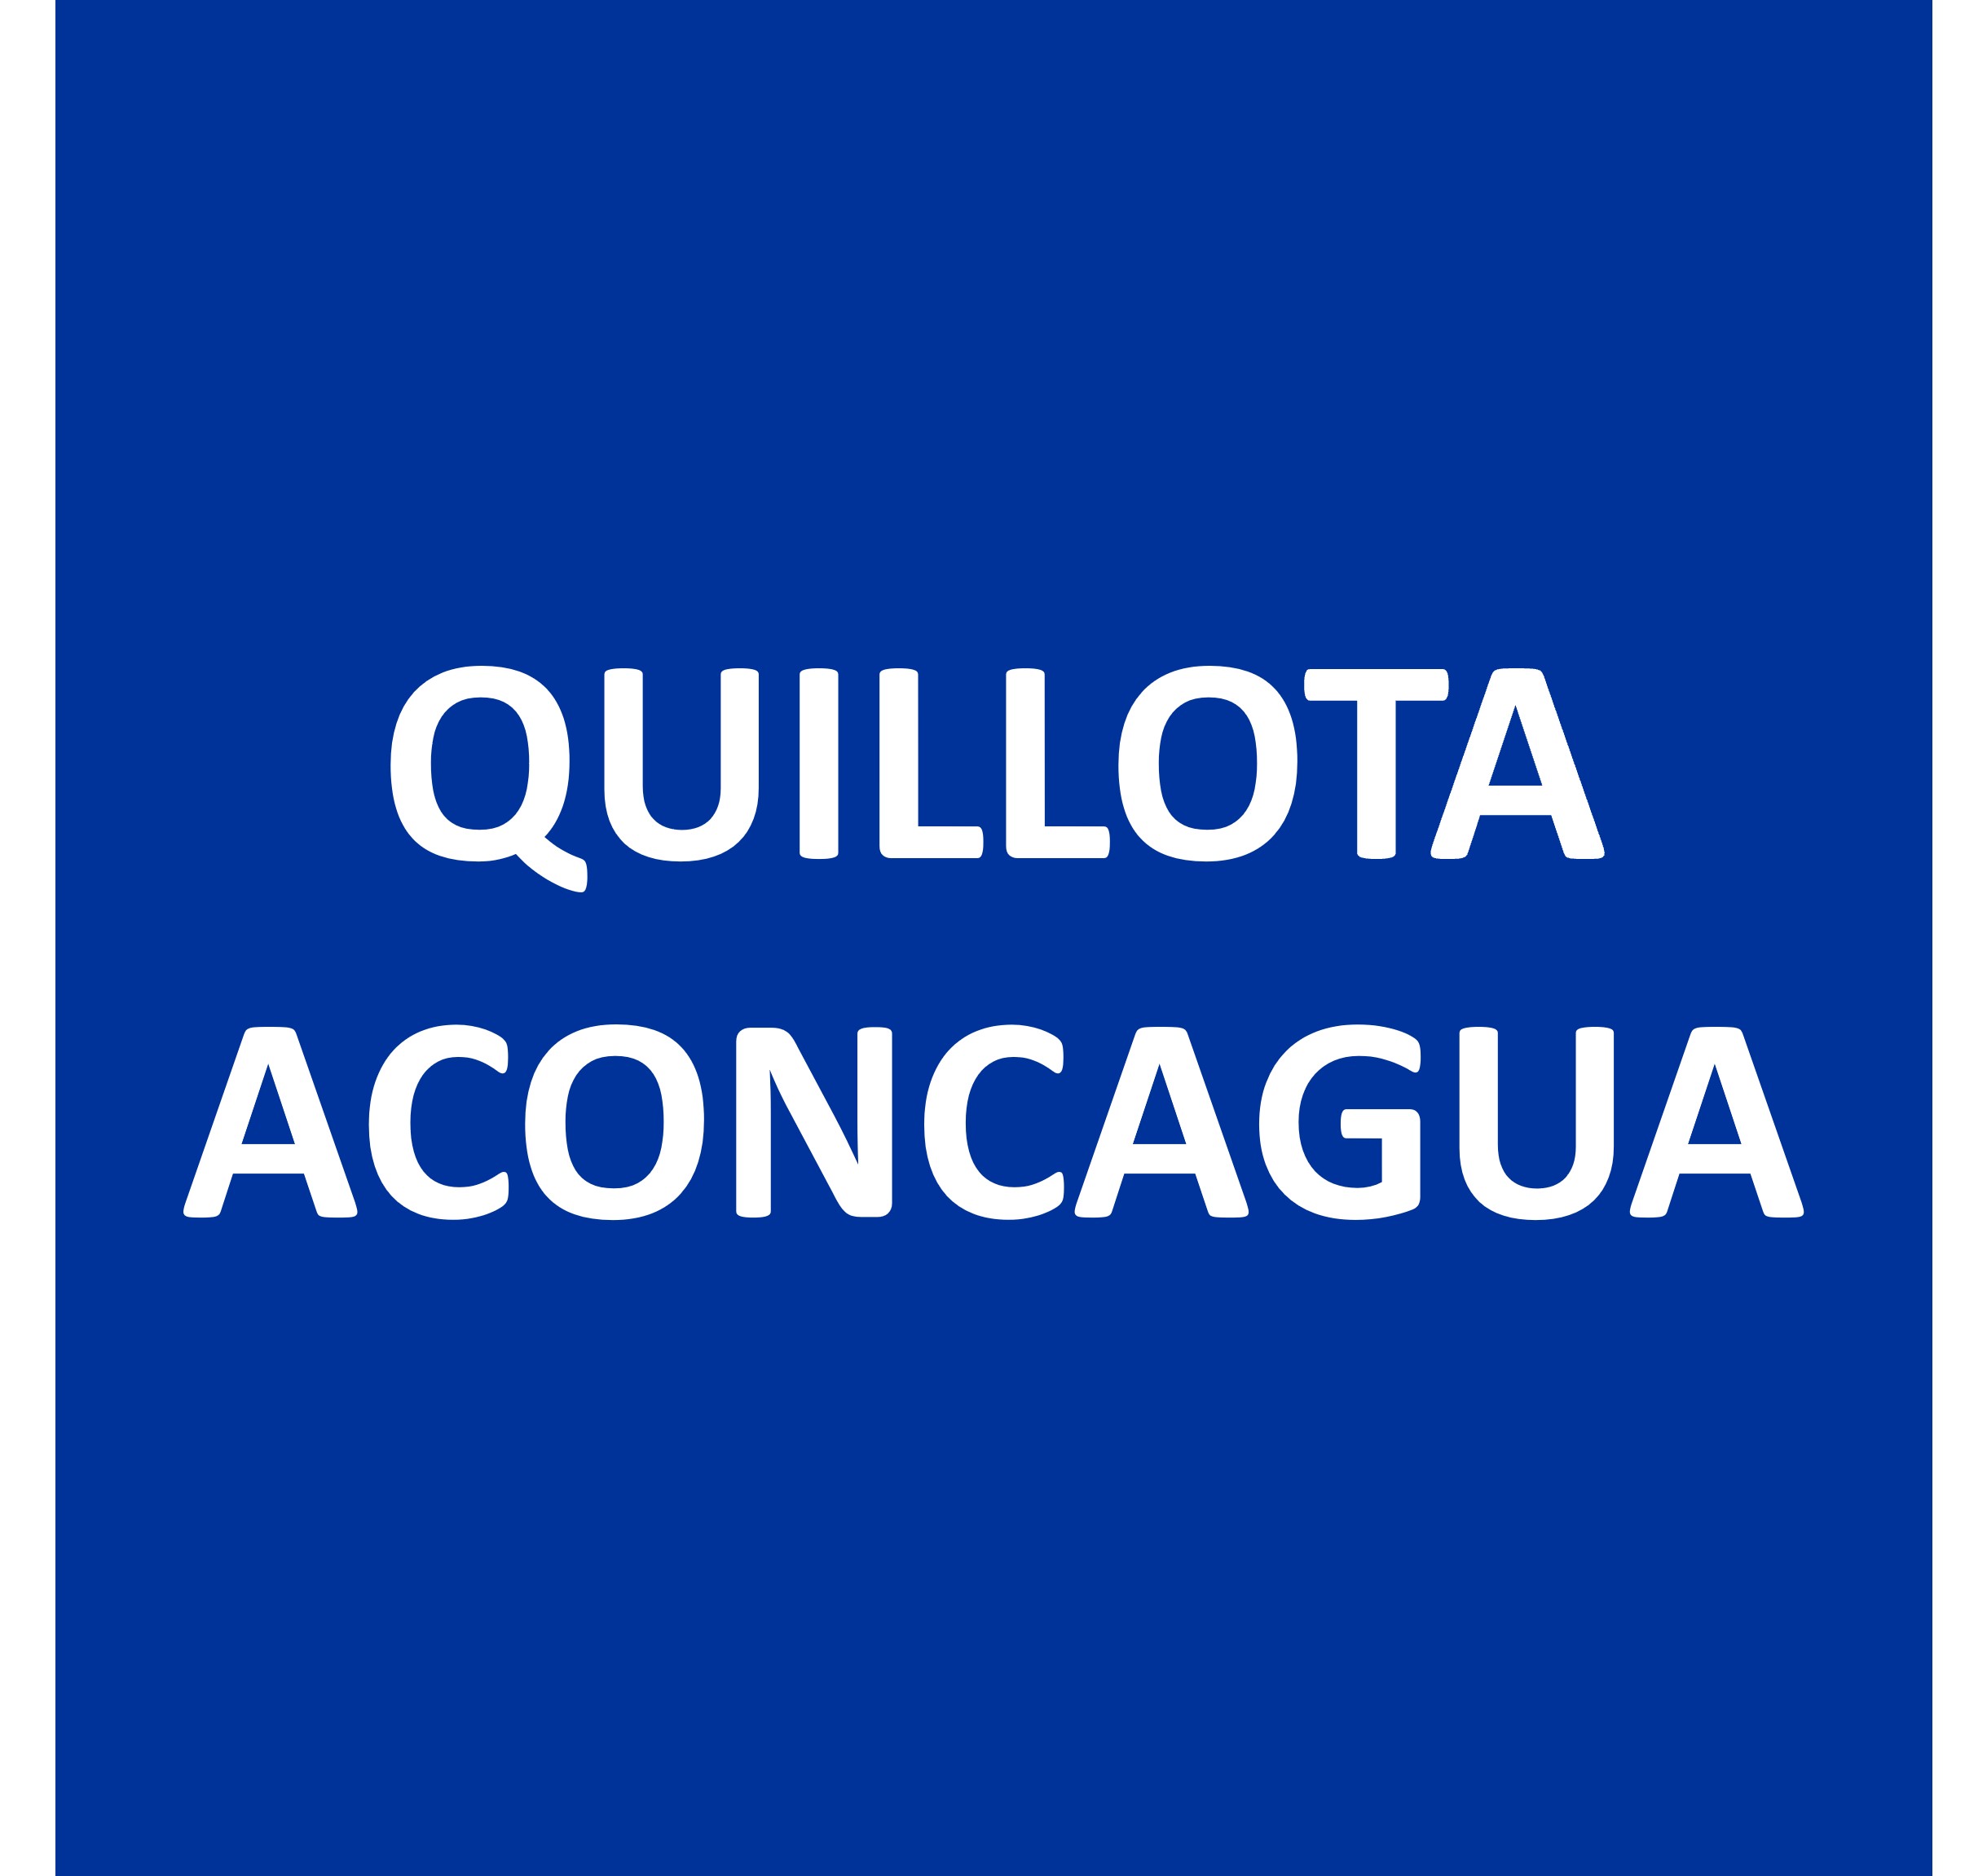 Quillota Aconcagua